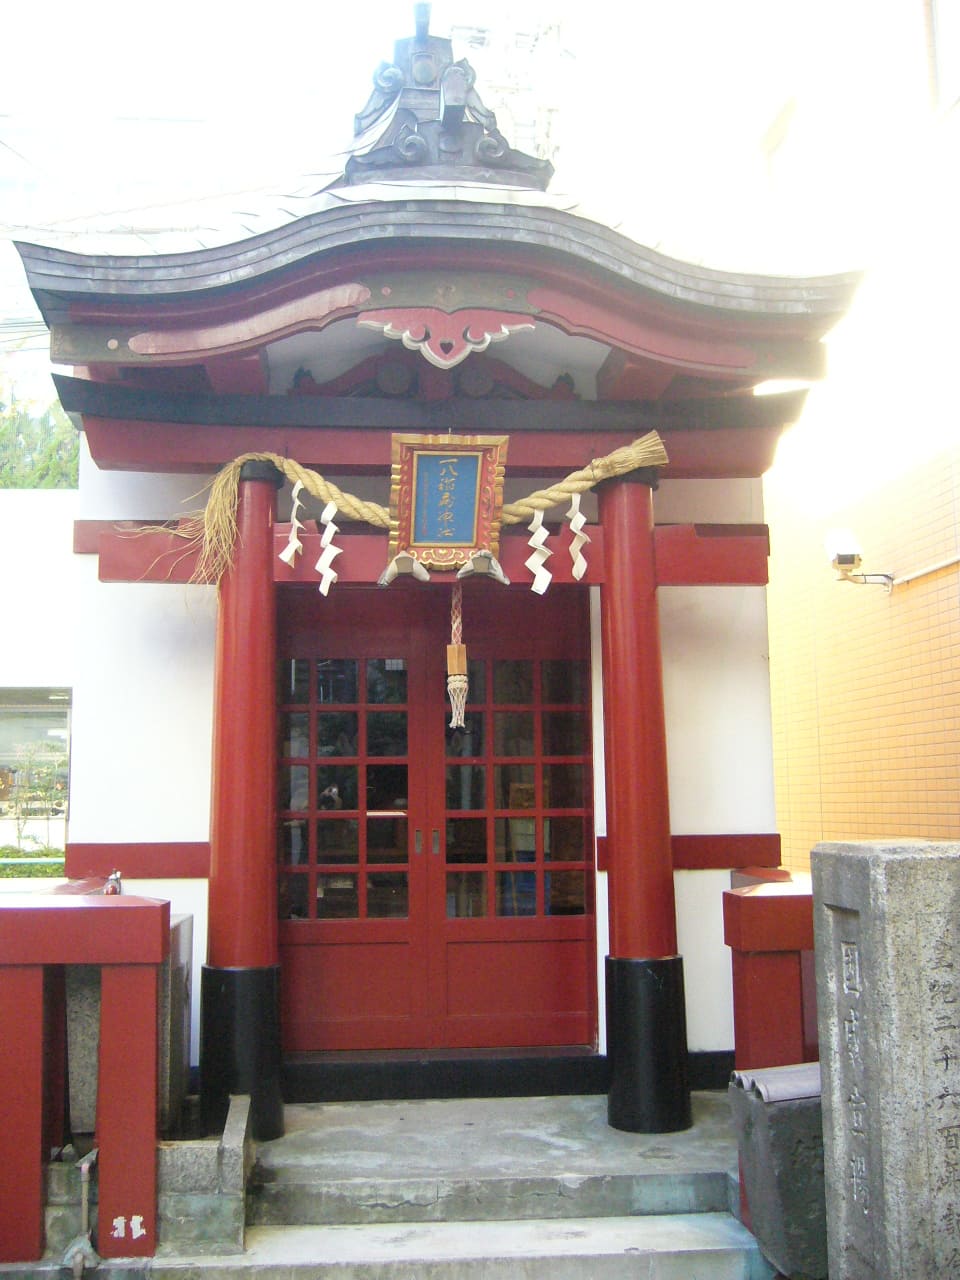  一八稲荷神社 